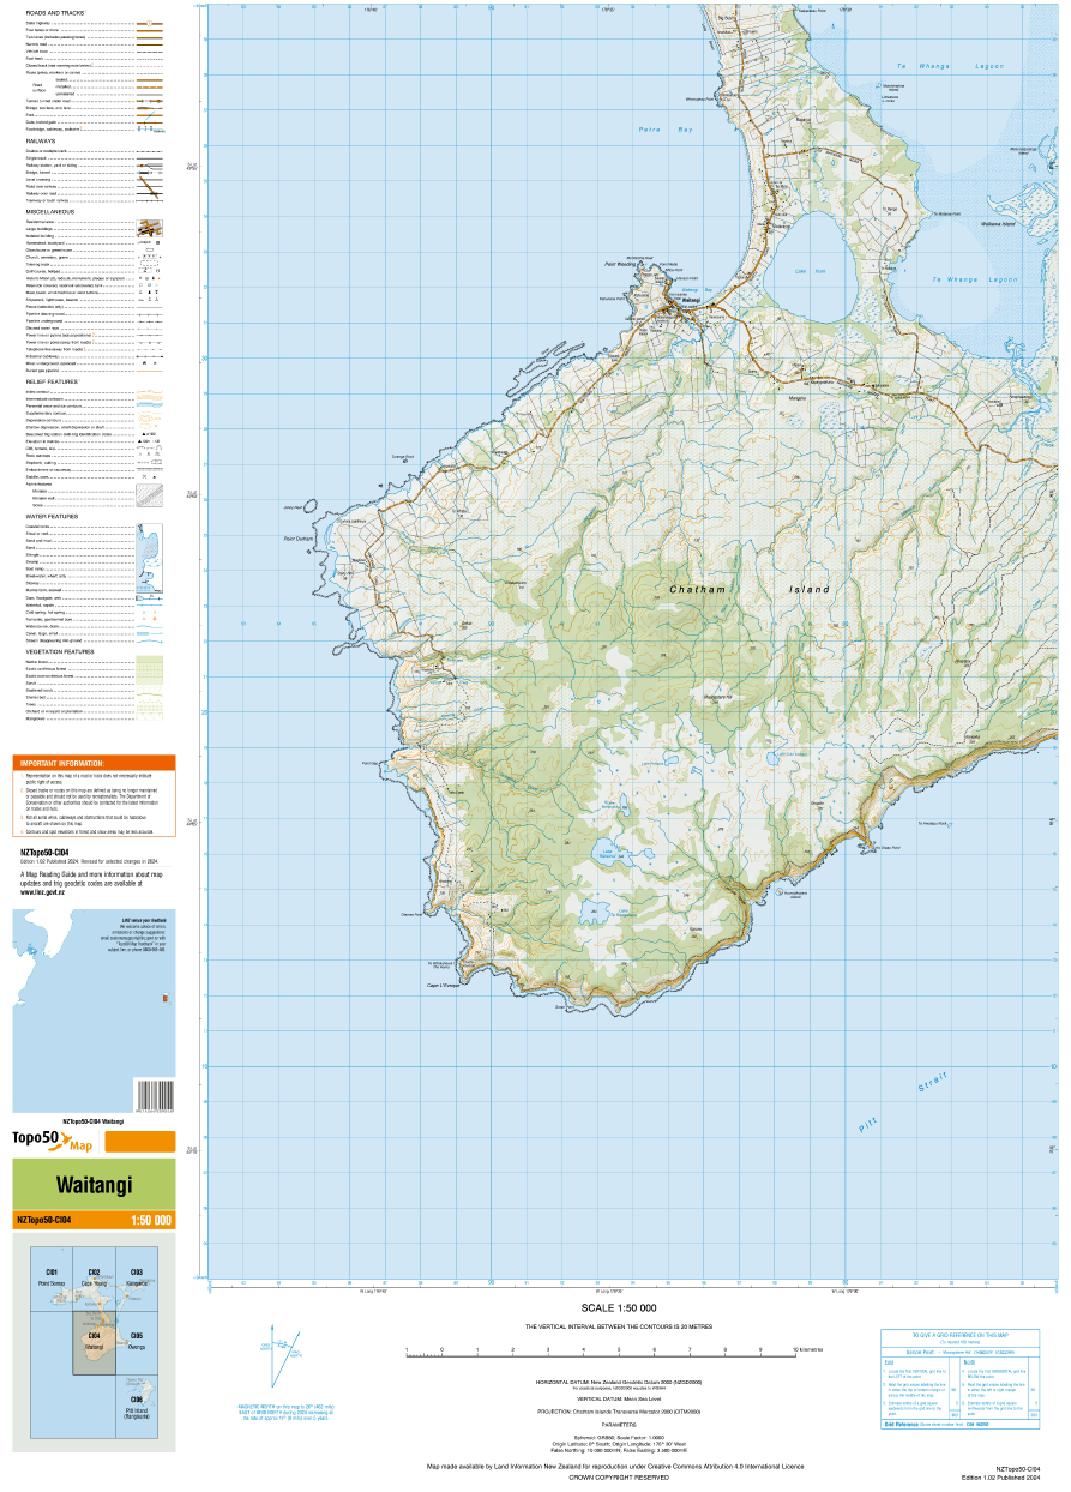 Topo map of Waitangi